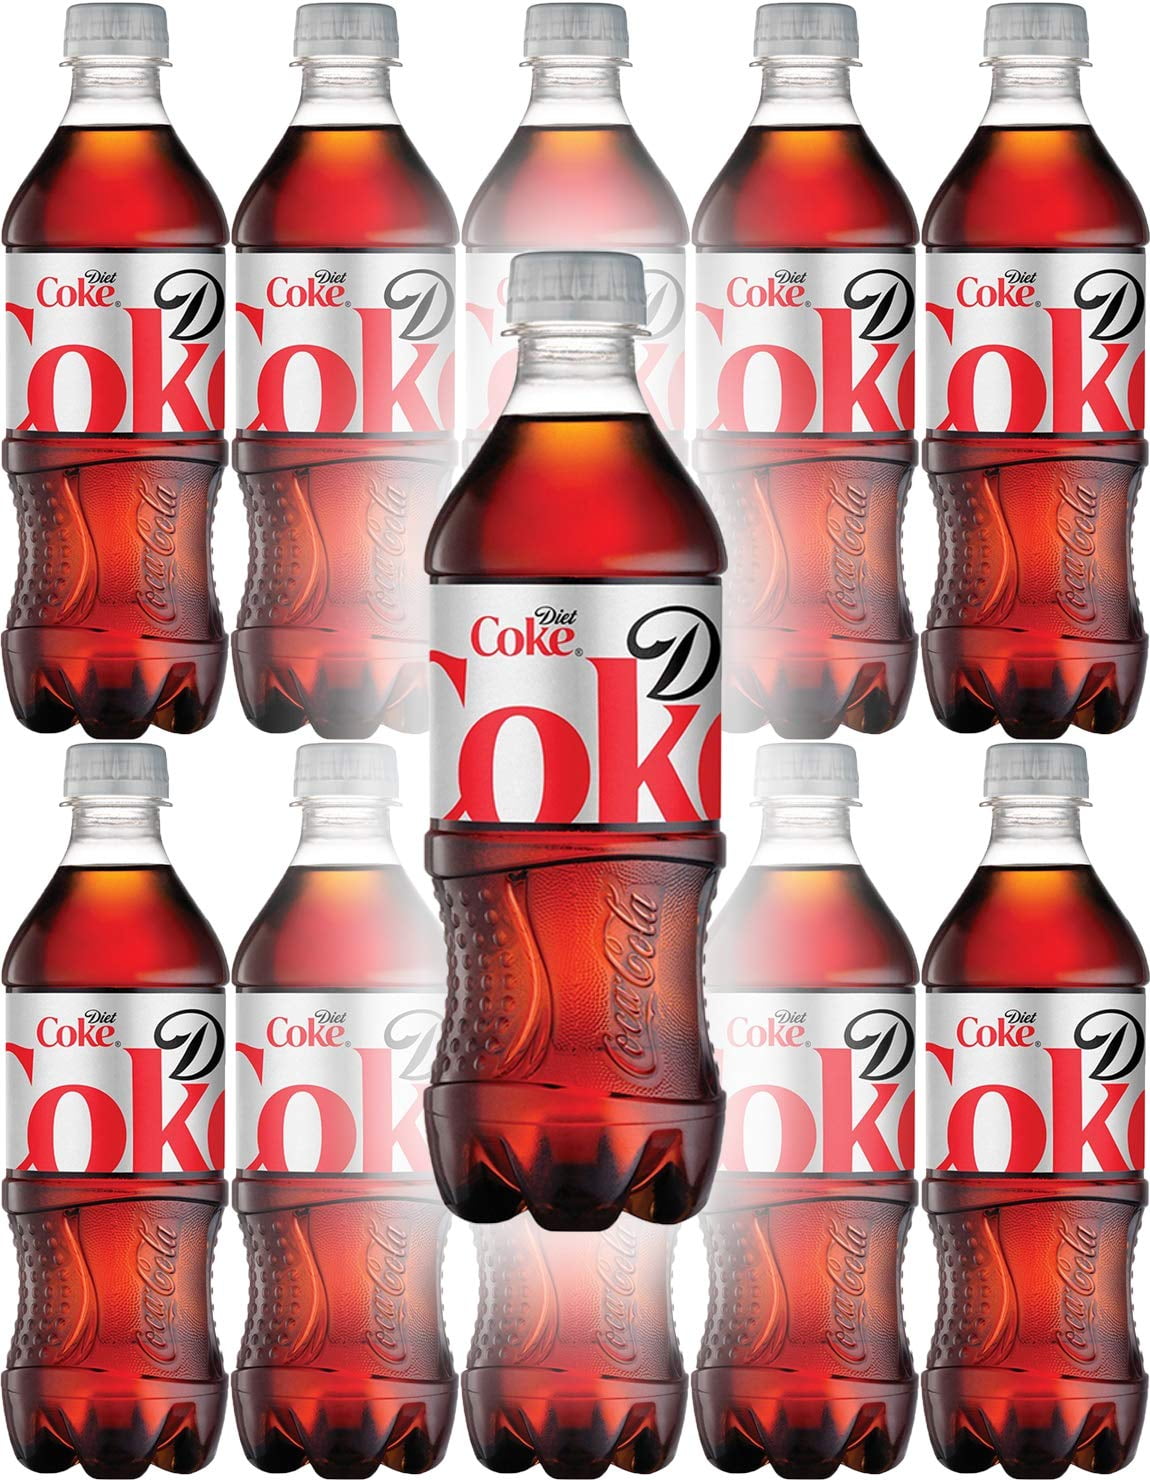 Diet Coke, 20 Oz. Bottles, 24 Pack